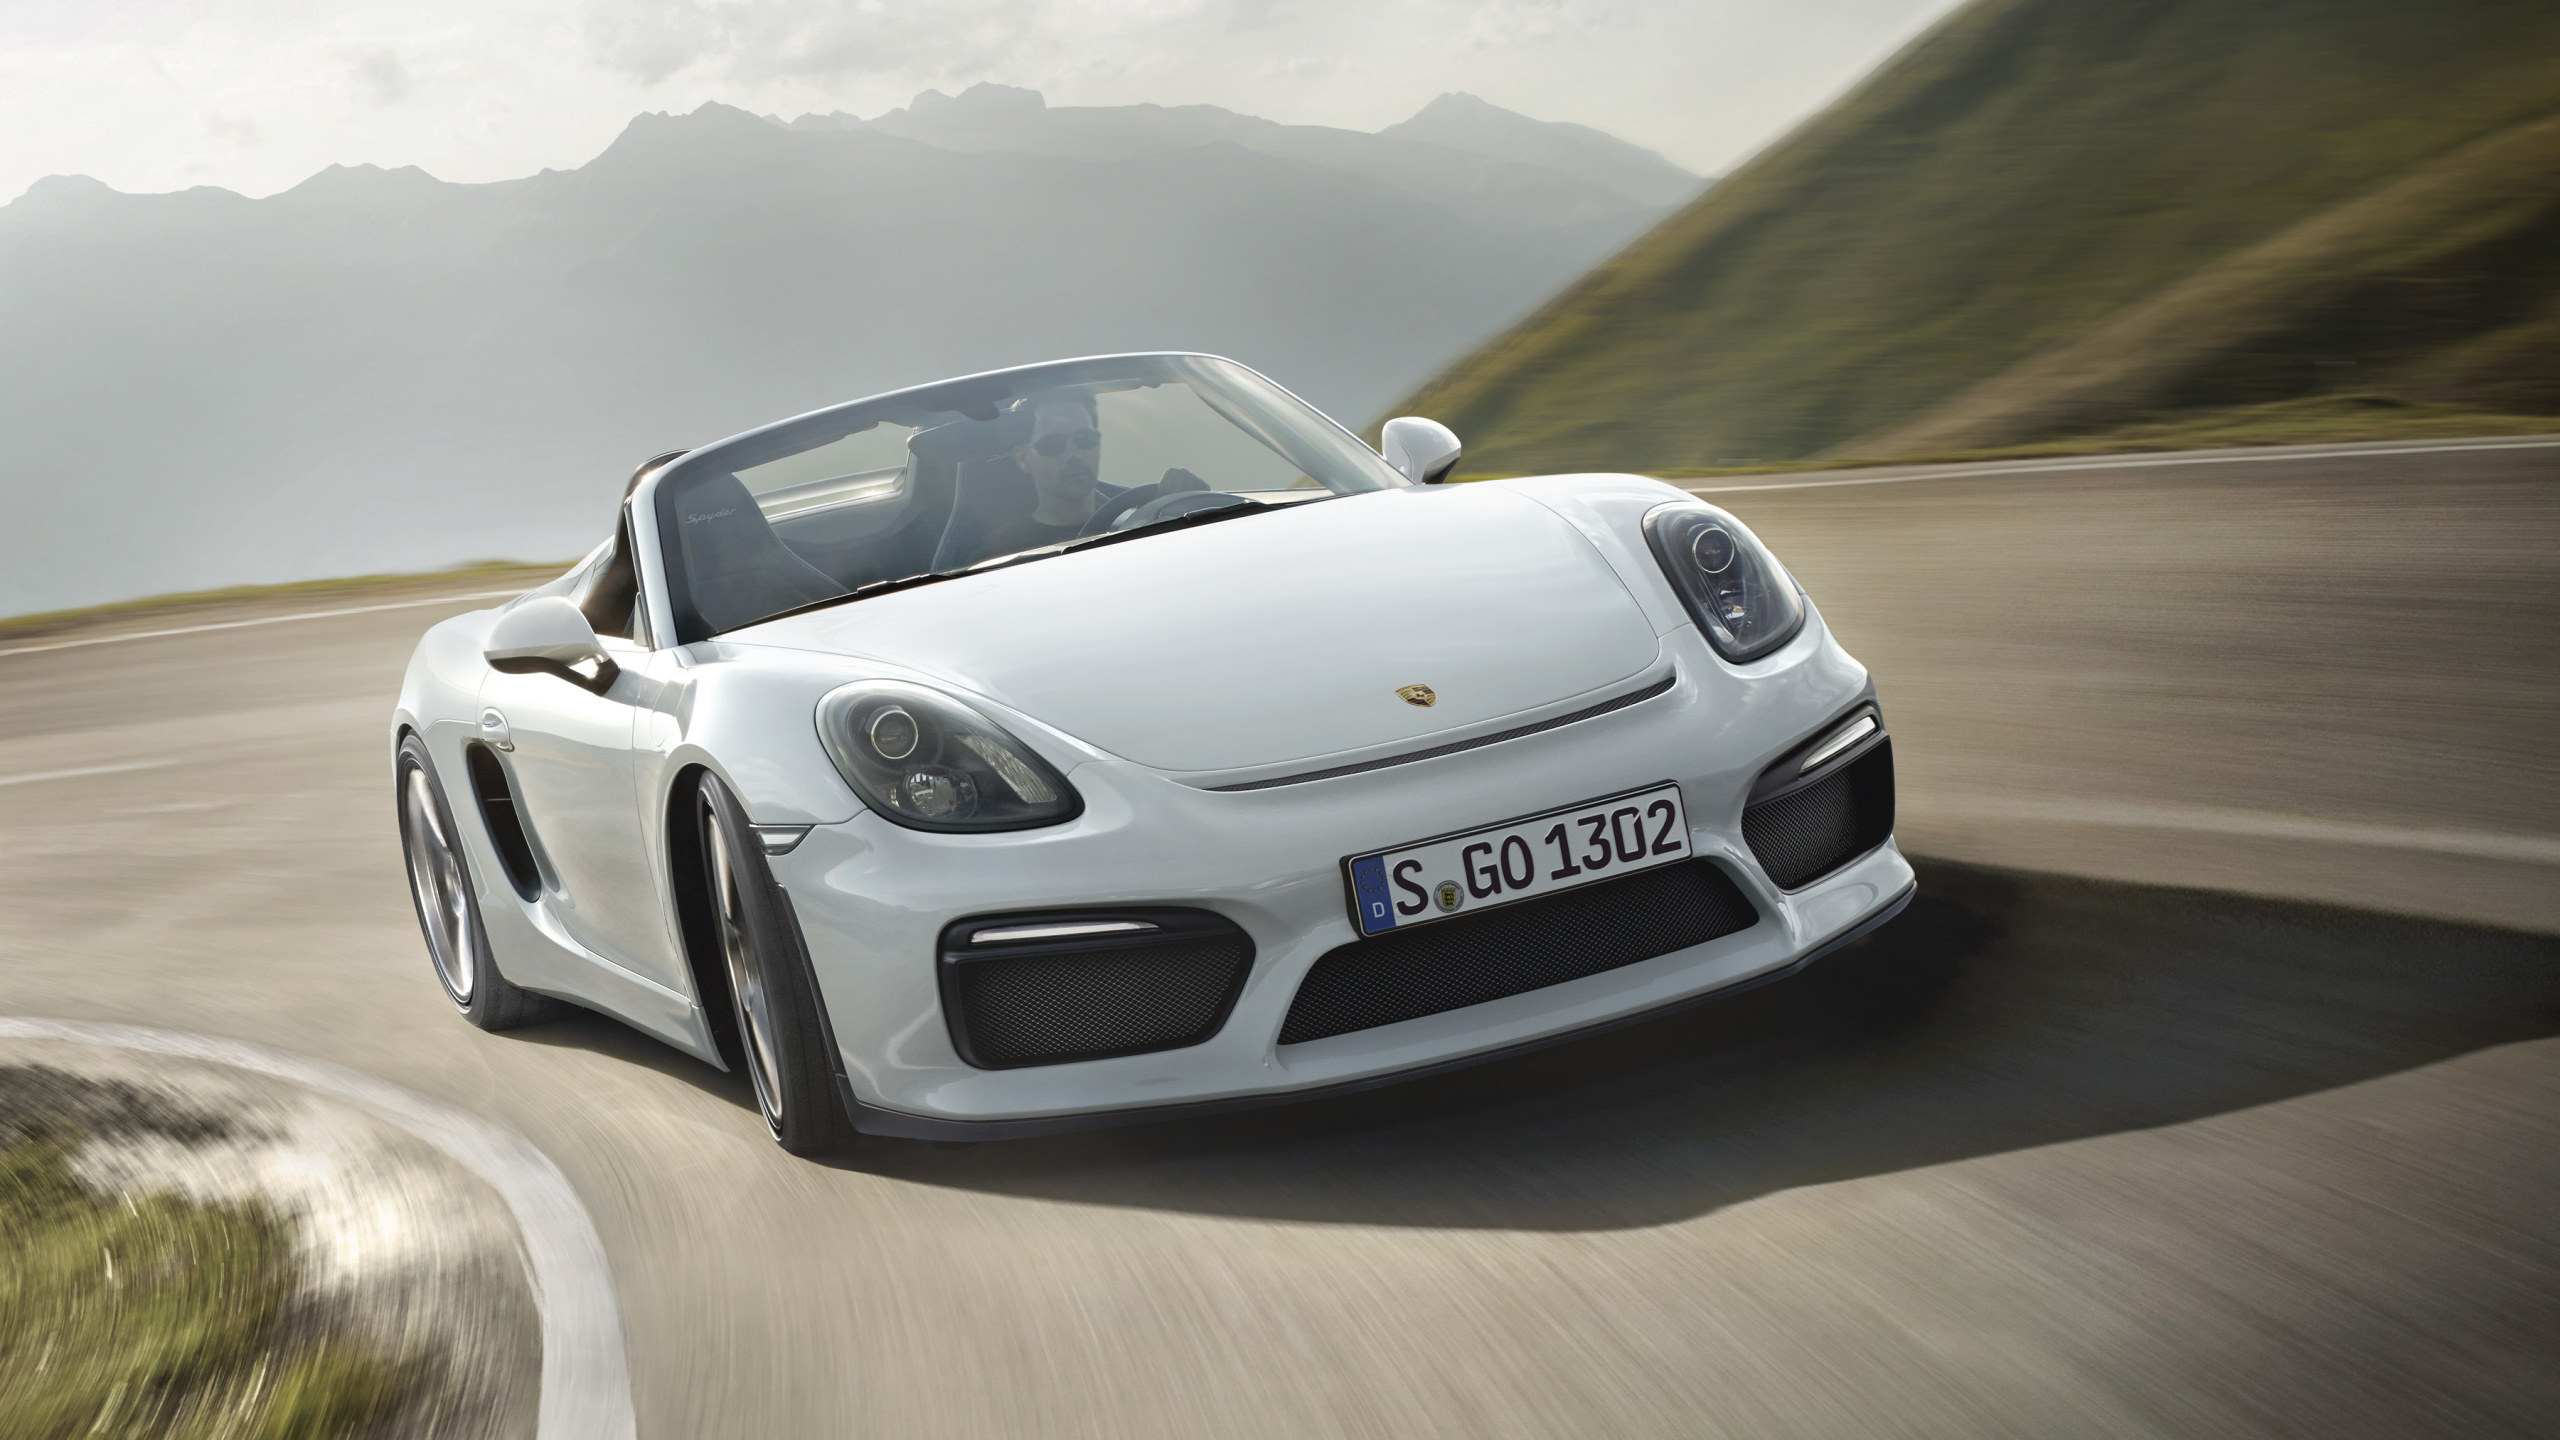 Porsche 911 Blanco en la Carretera Durante el Día. Wallpaper in 2560x1440 Resolution